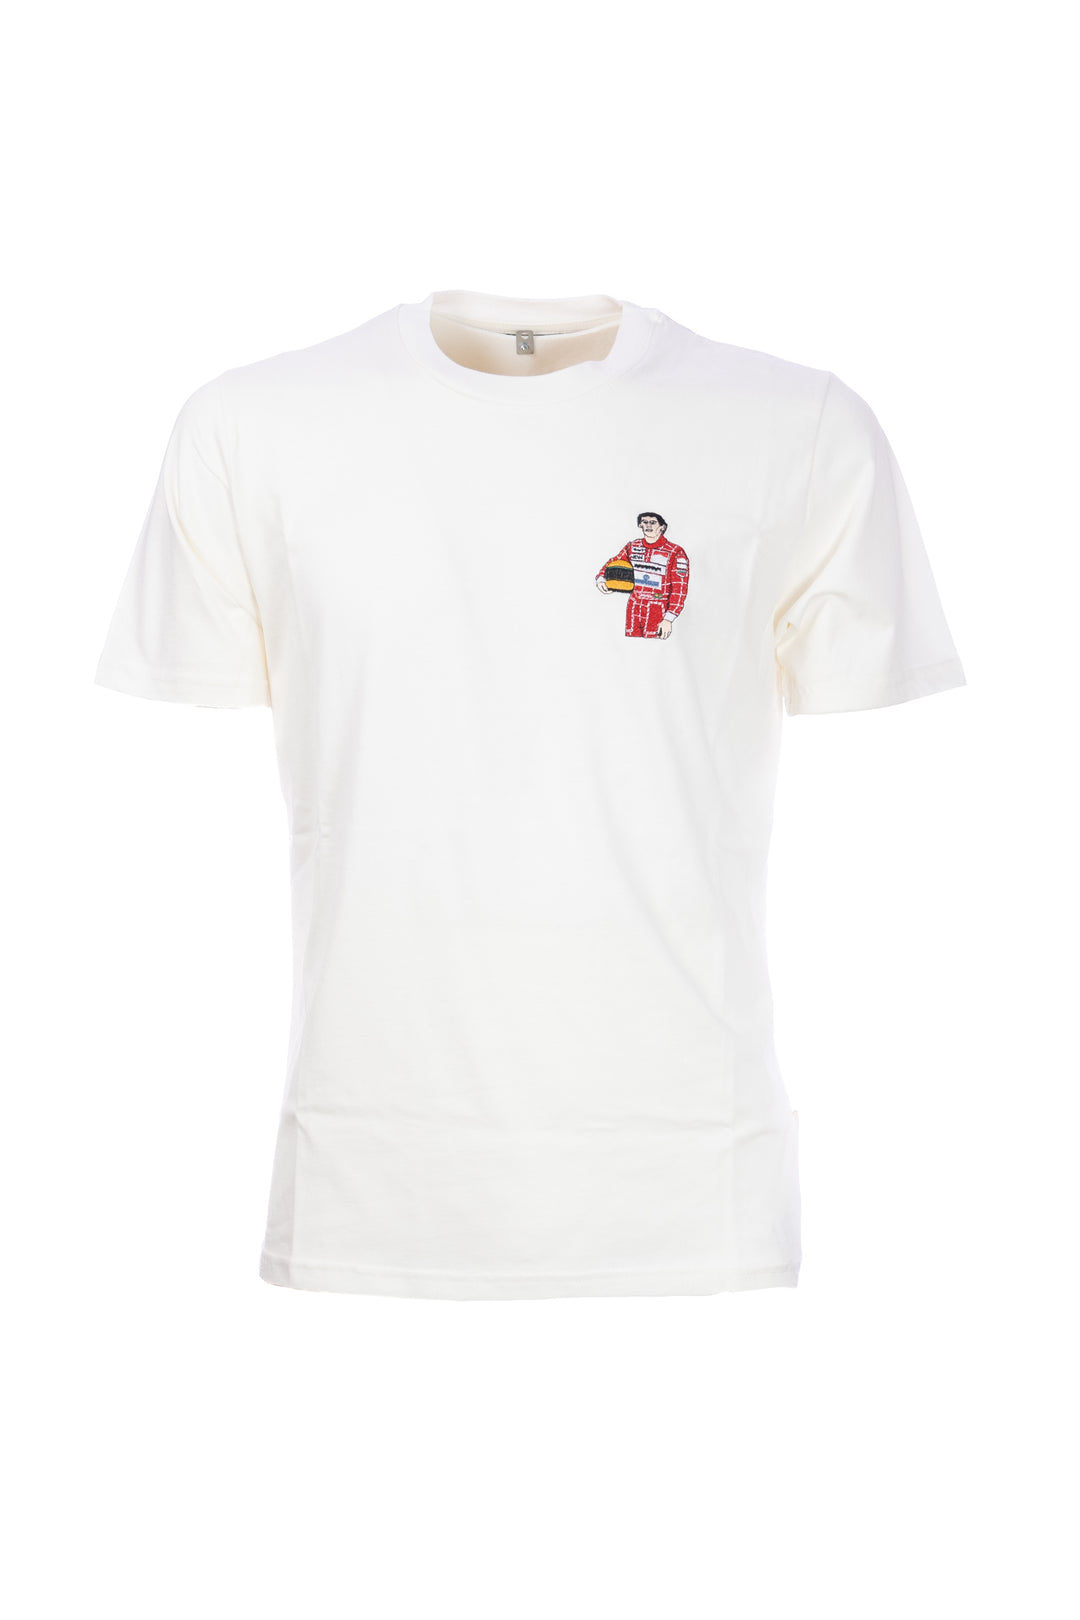 TEMATICO T-shirt panna in cotone con ricamo Senna sul petto - Mancinelli 1954